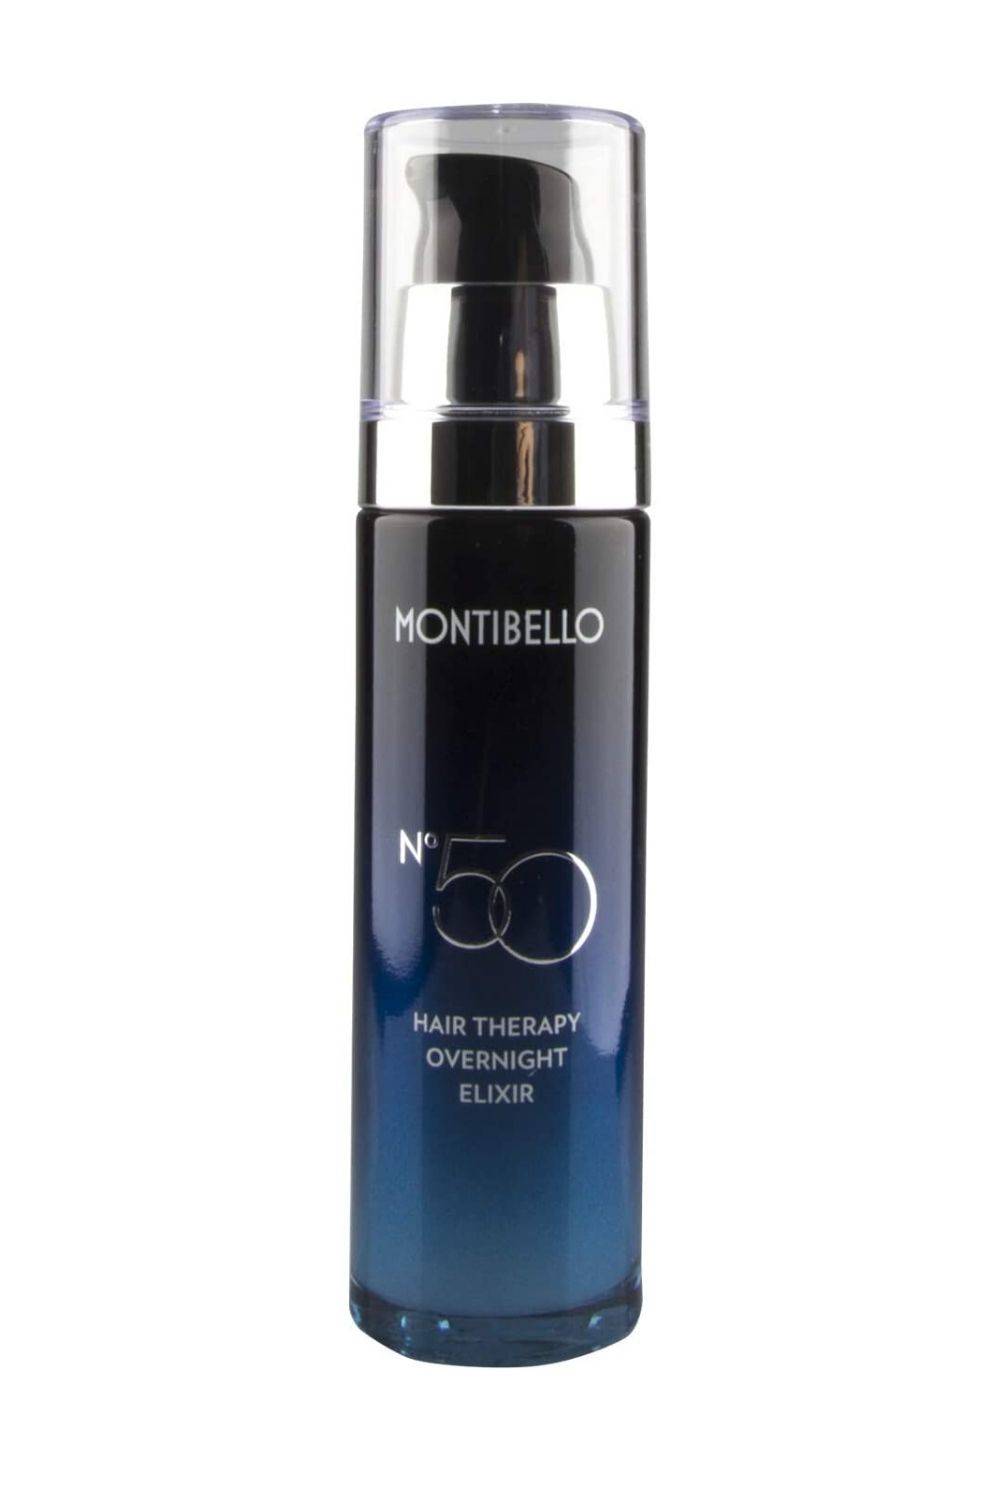 Nº 50 Hair Therapy Overnight Elixir, de Montibello